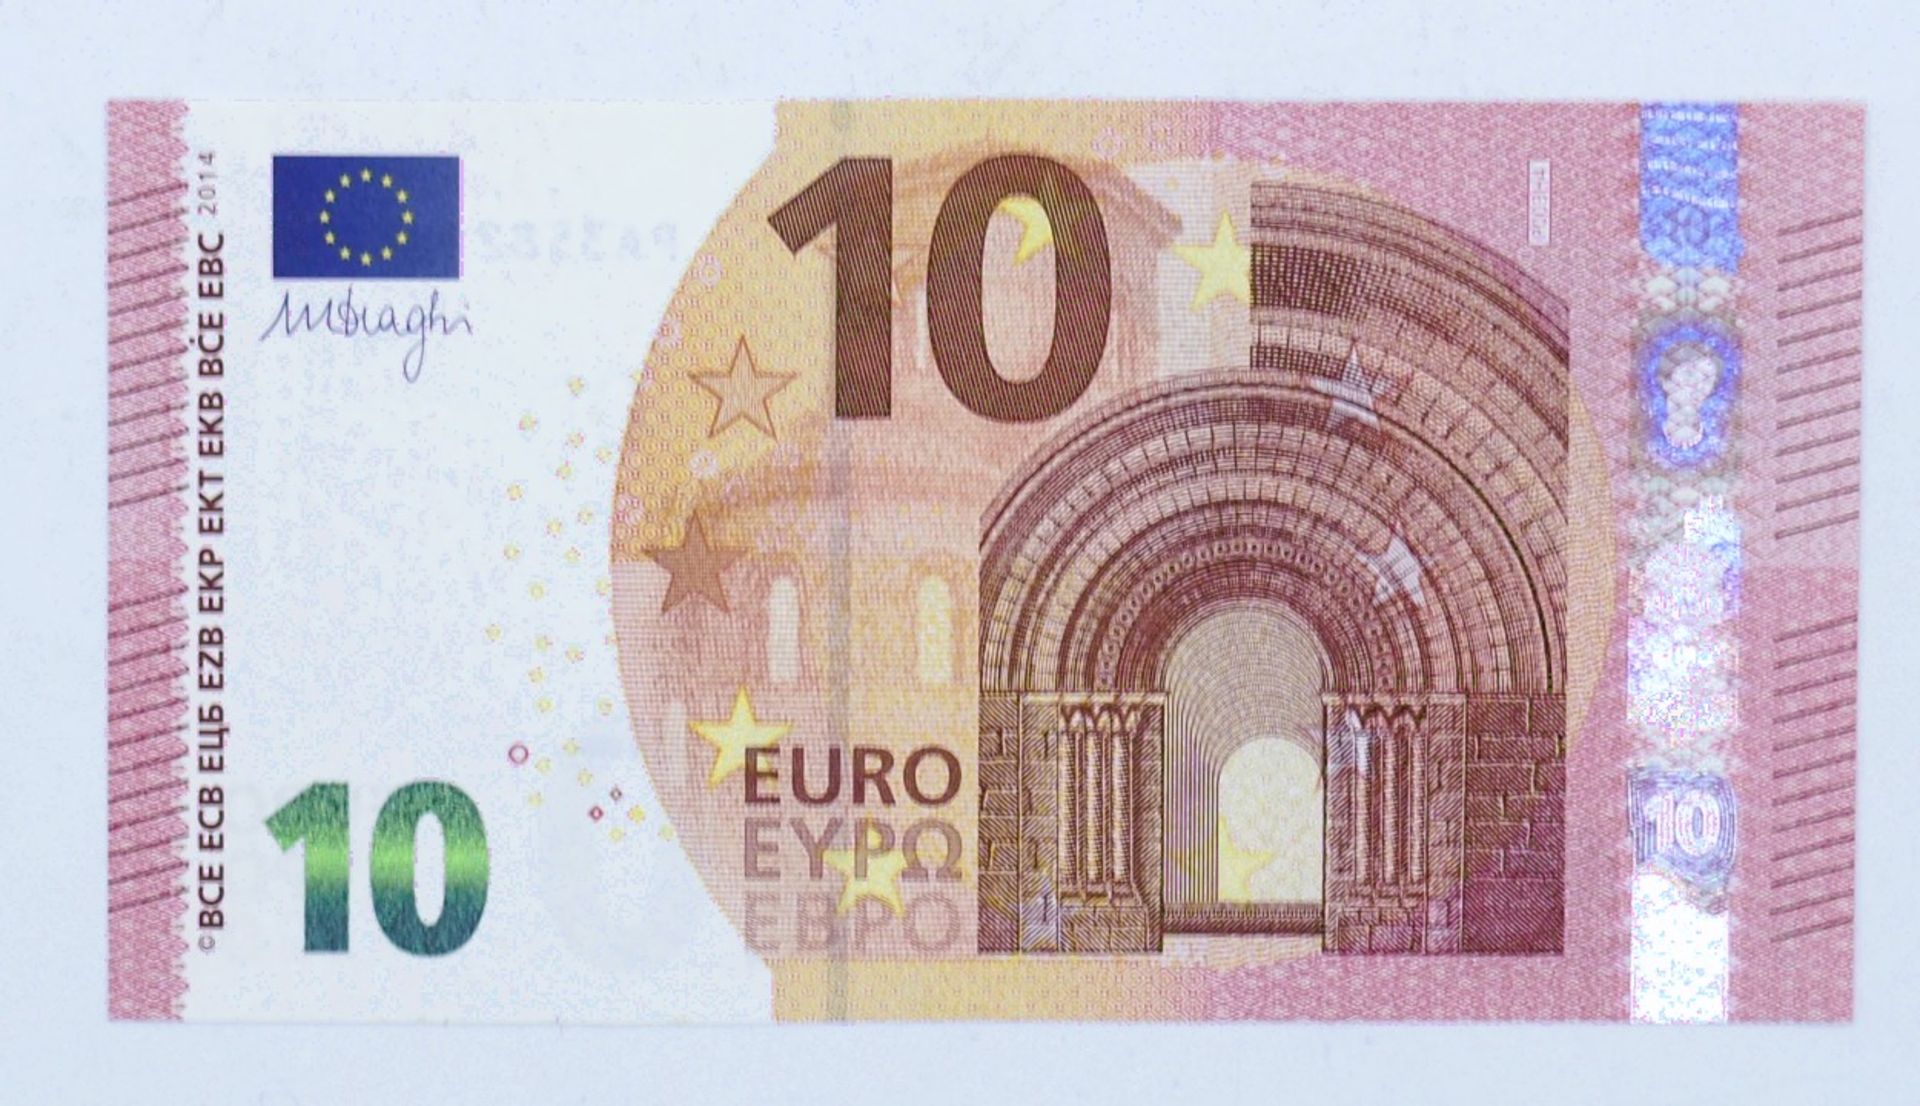 BRD 2014, 10 Euro Banknote, Signatur: Draghi. Erhaltung: Kassenfrisch.